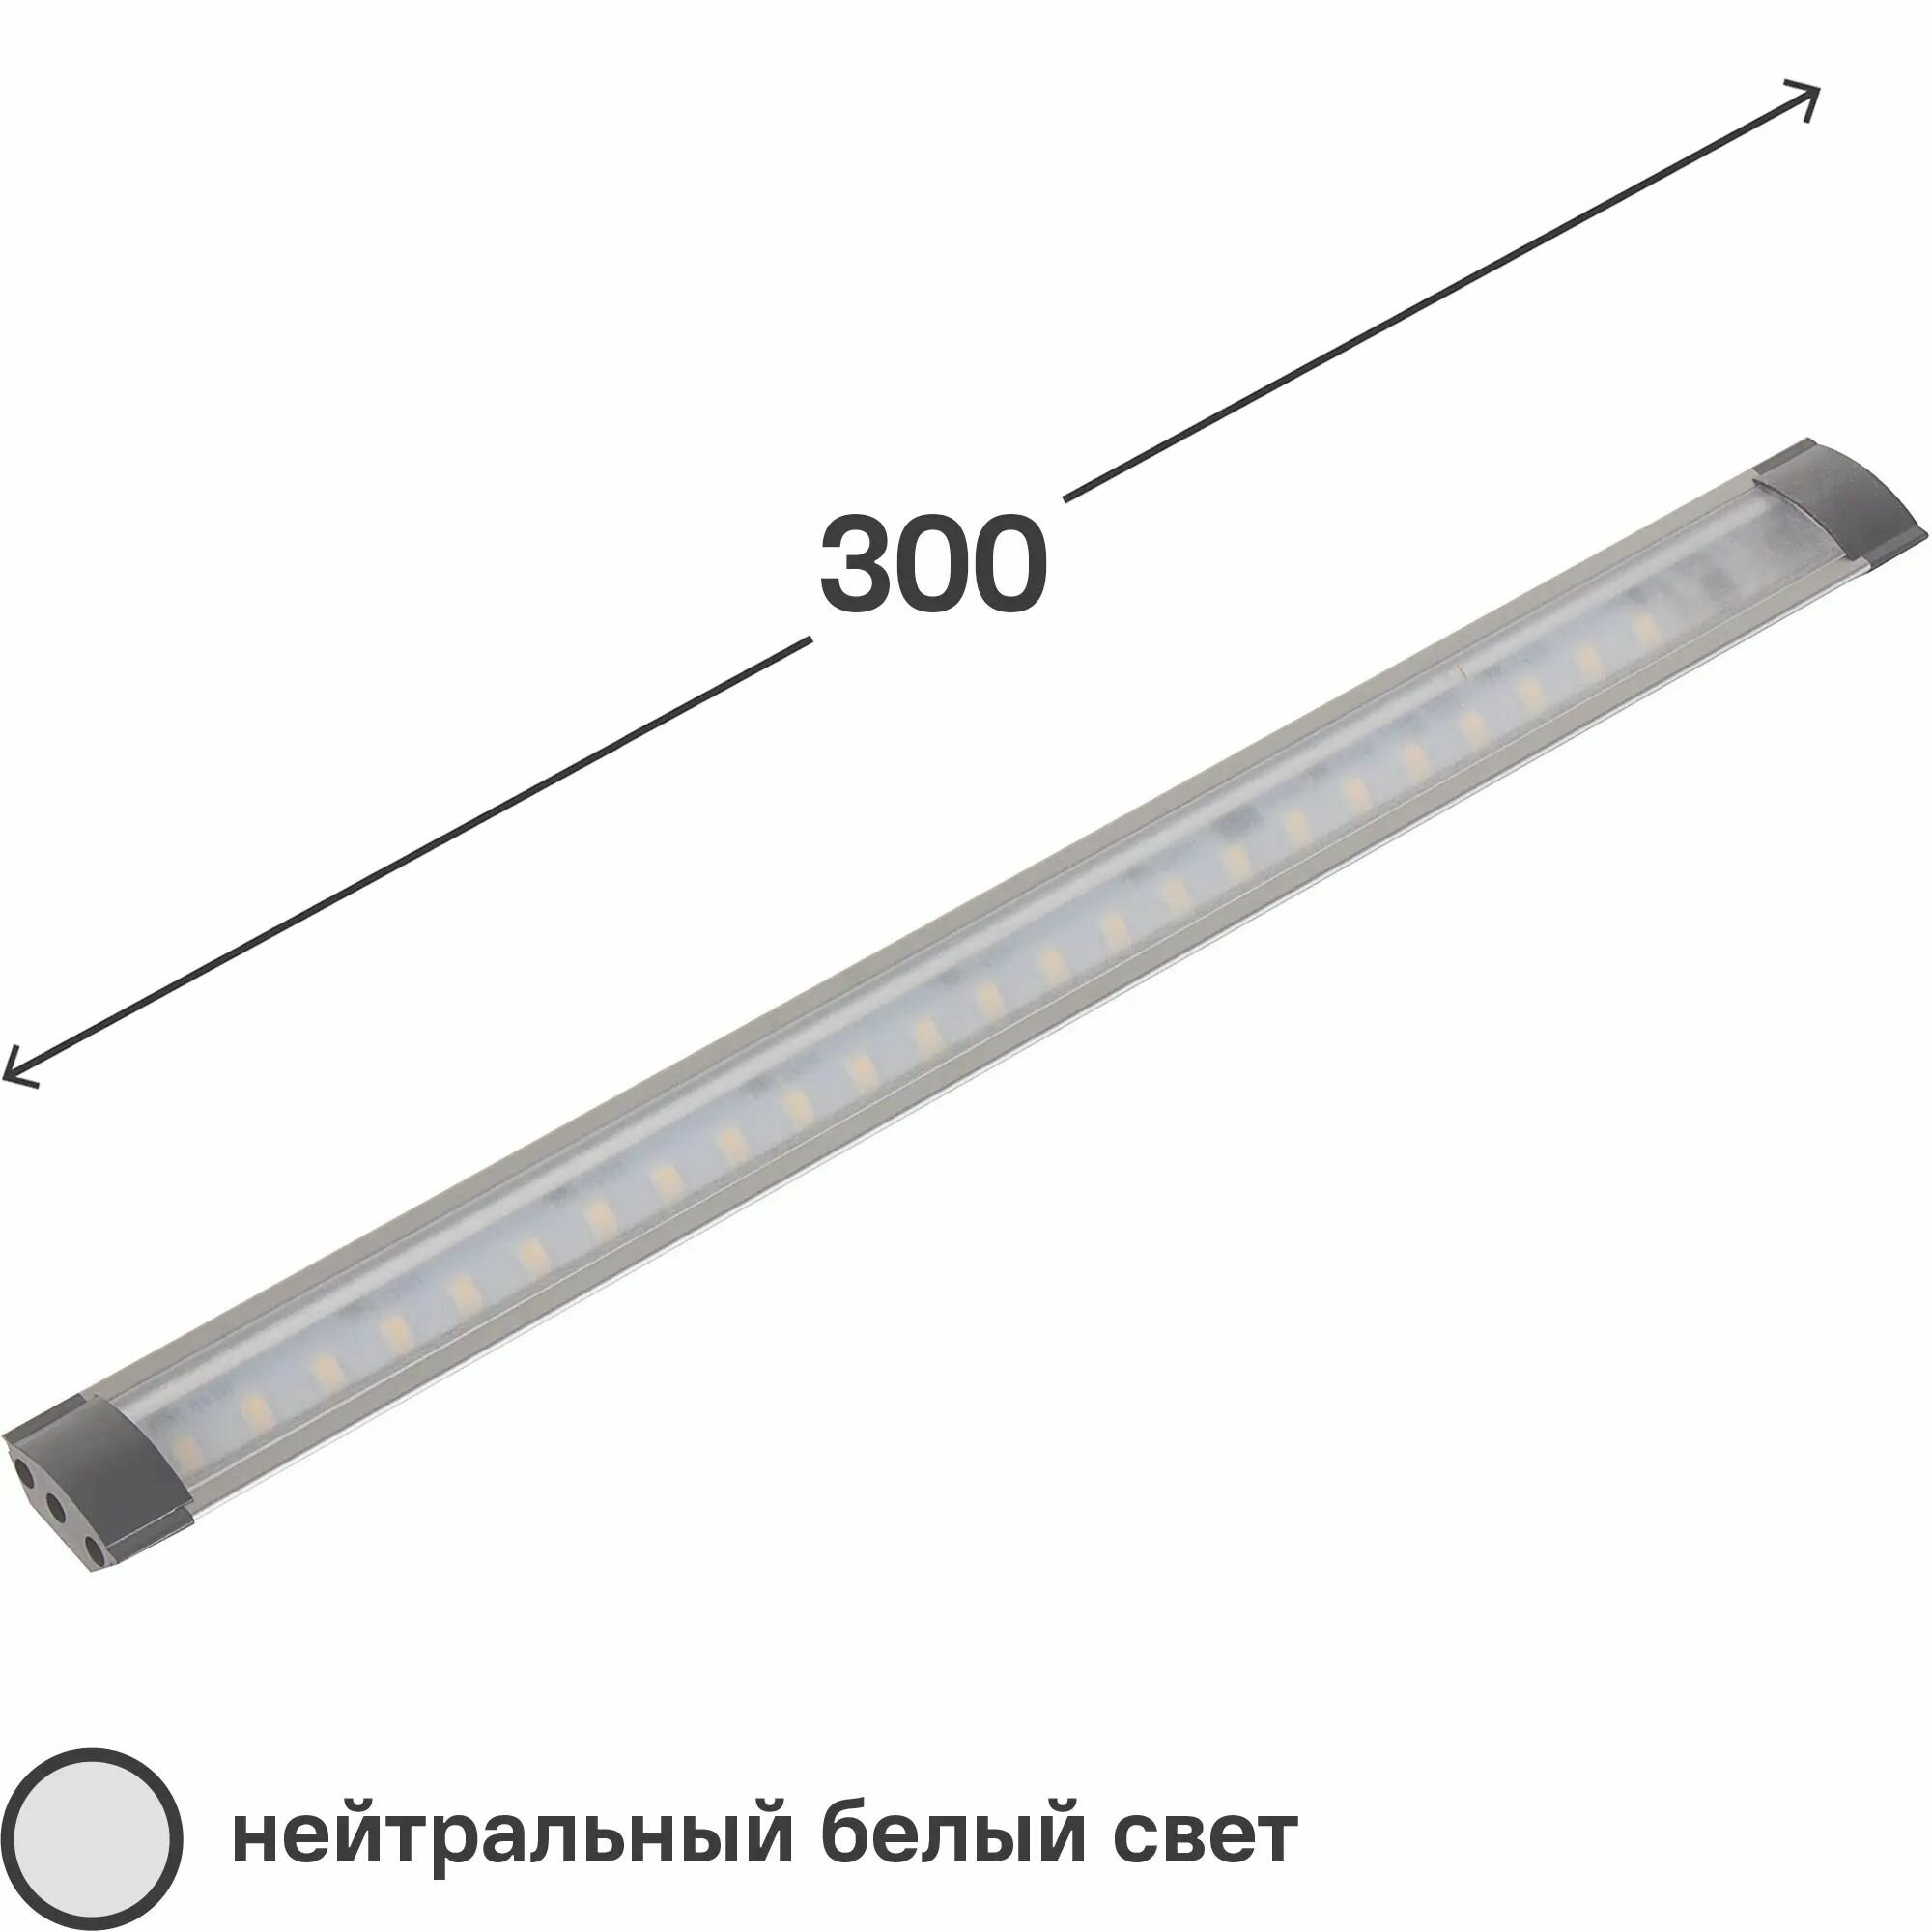 Светильник модульный светодиодный Эра LM-840-A1 угловой с датчиком прикосновения 30 см 3 Вт белый свет